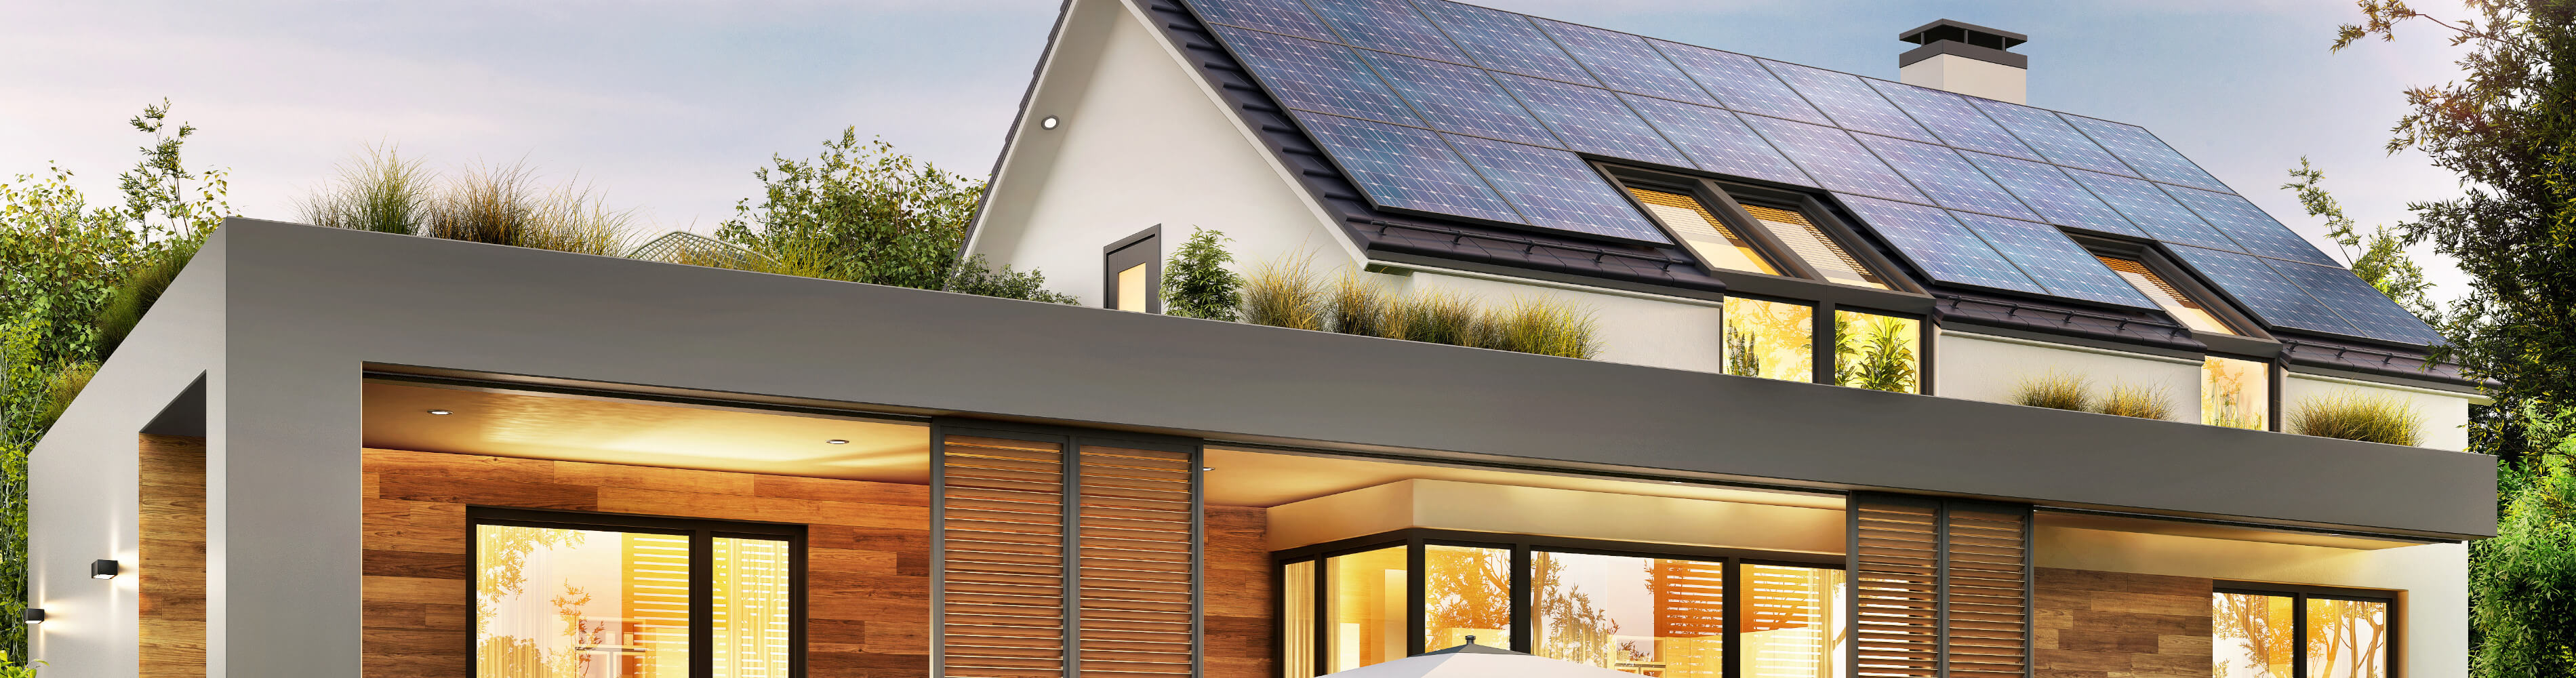 Modernes Haus mit Solarmodulen auf dem Dach